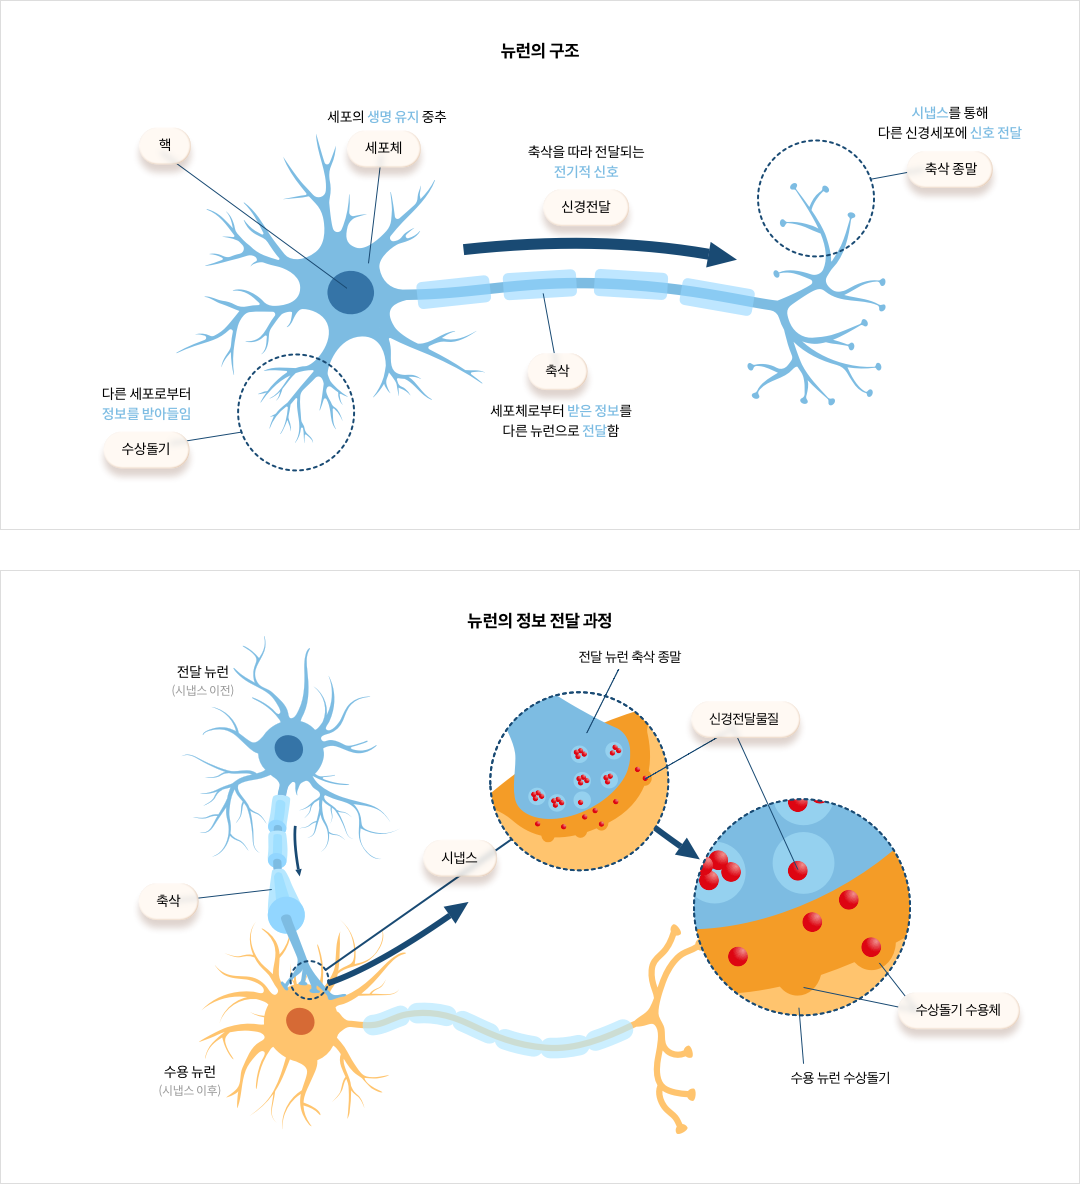 뉴런의 구조와 정보 전달 과정